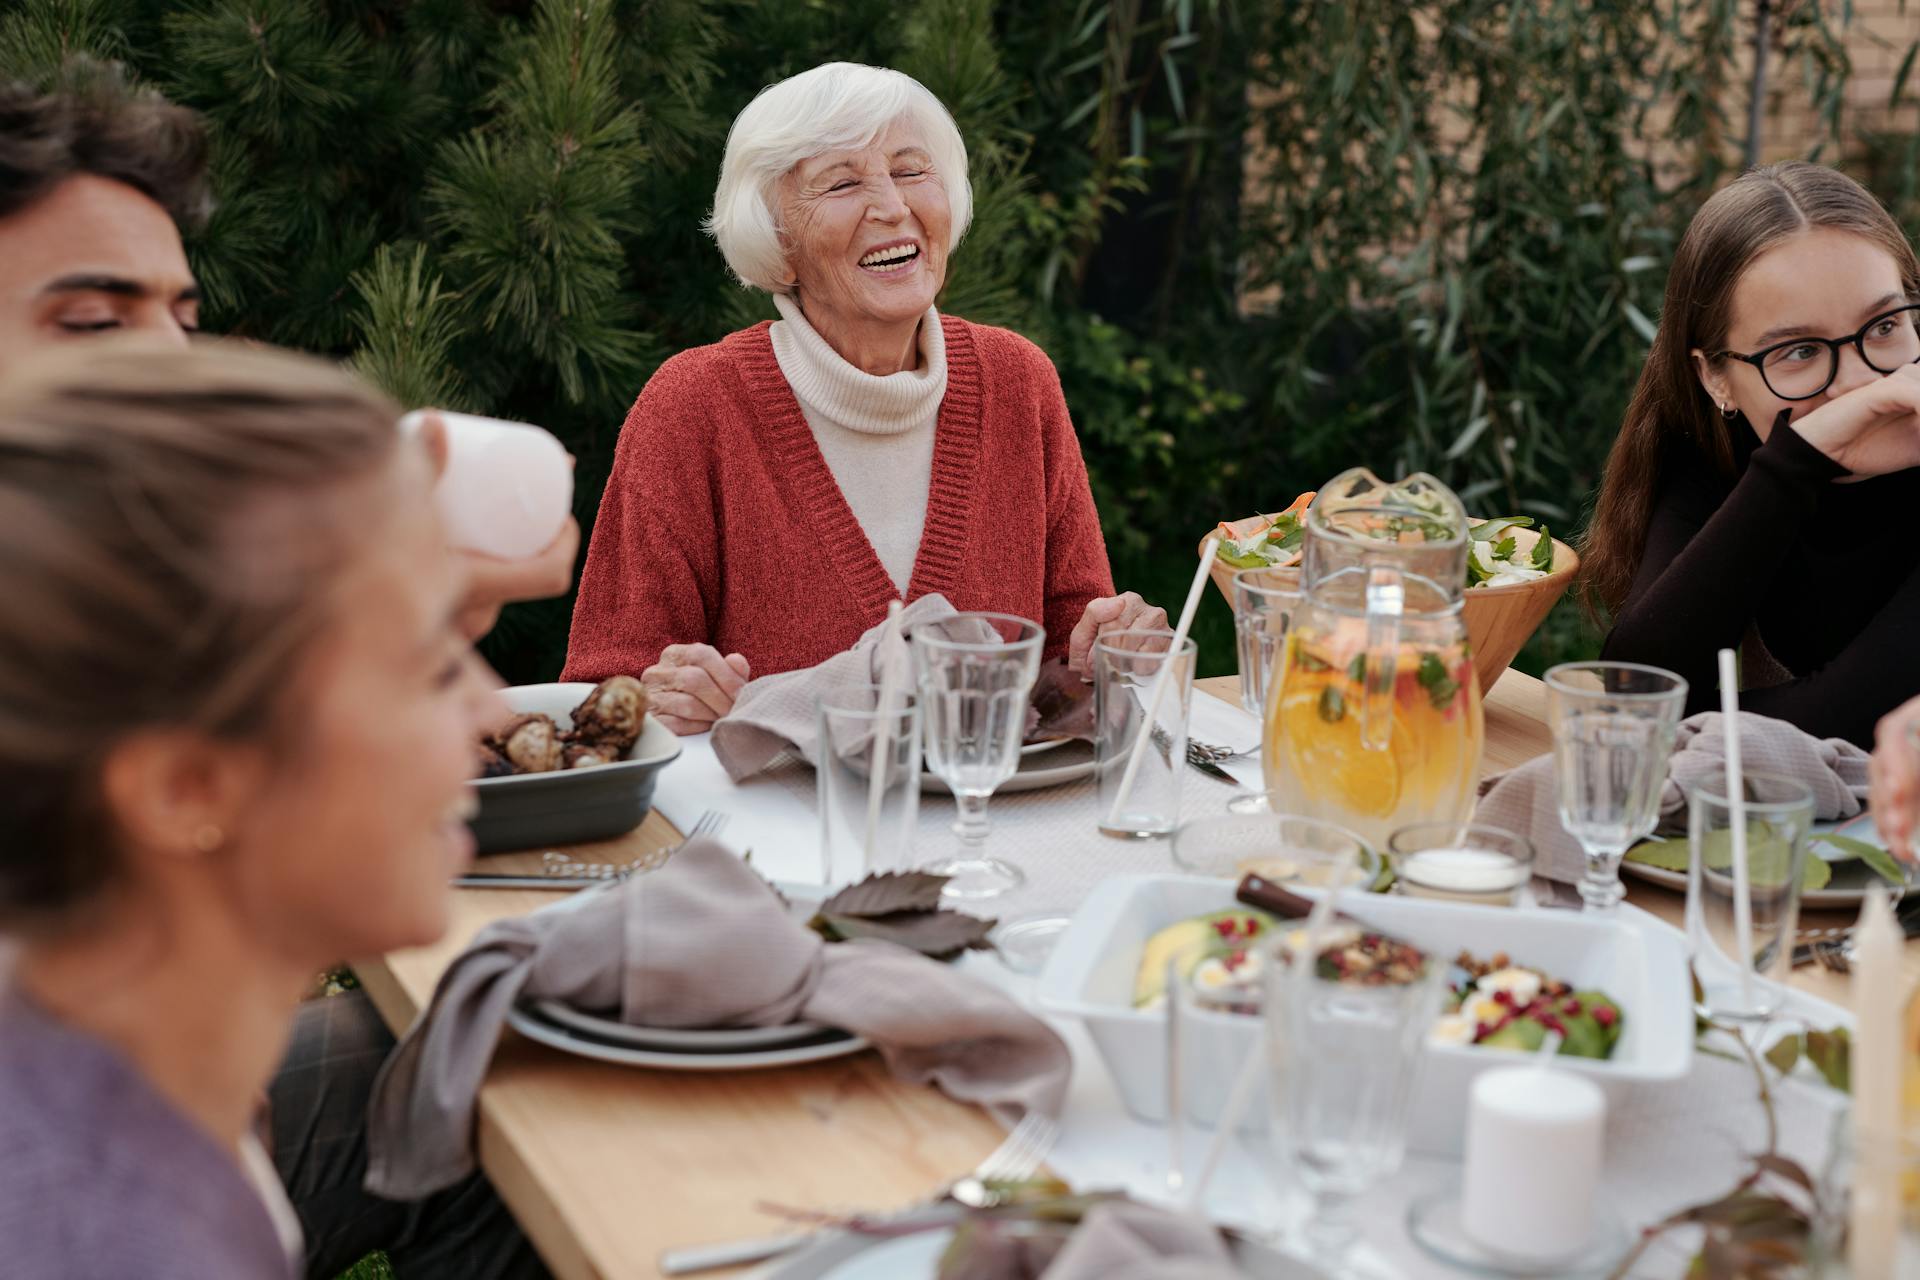 Une femme âgée qui rit lors d'une réunion de famille | Source : Pexels